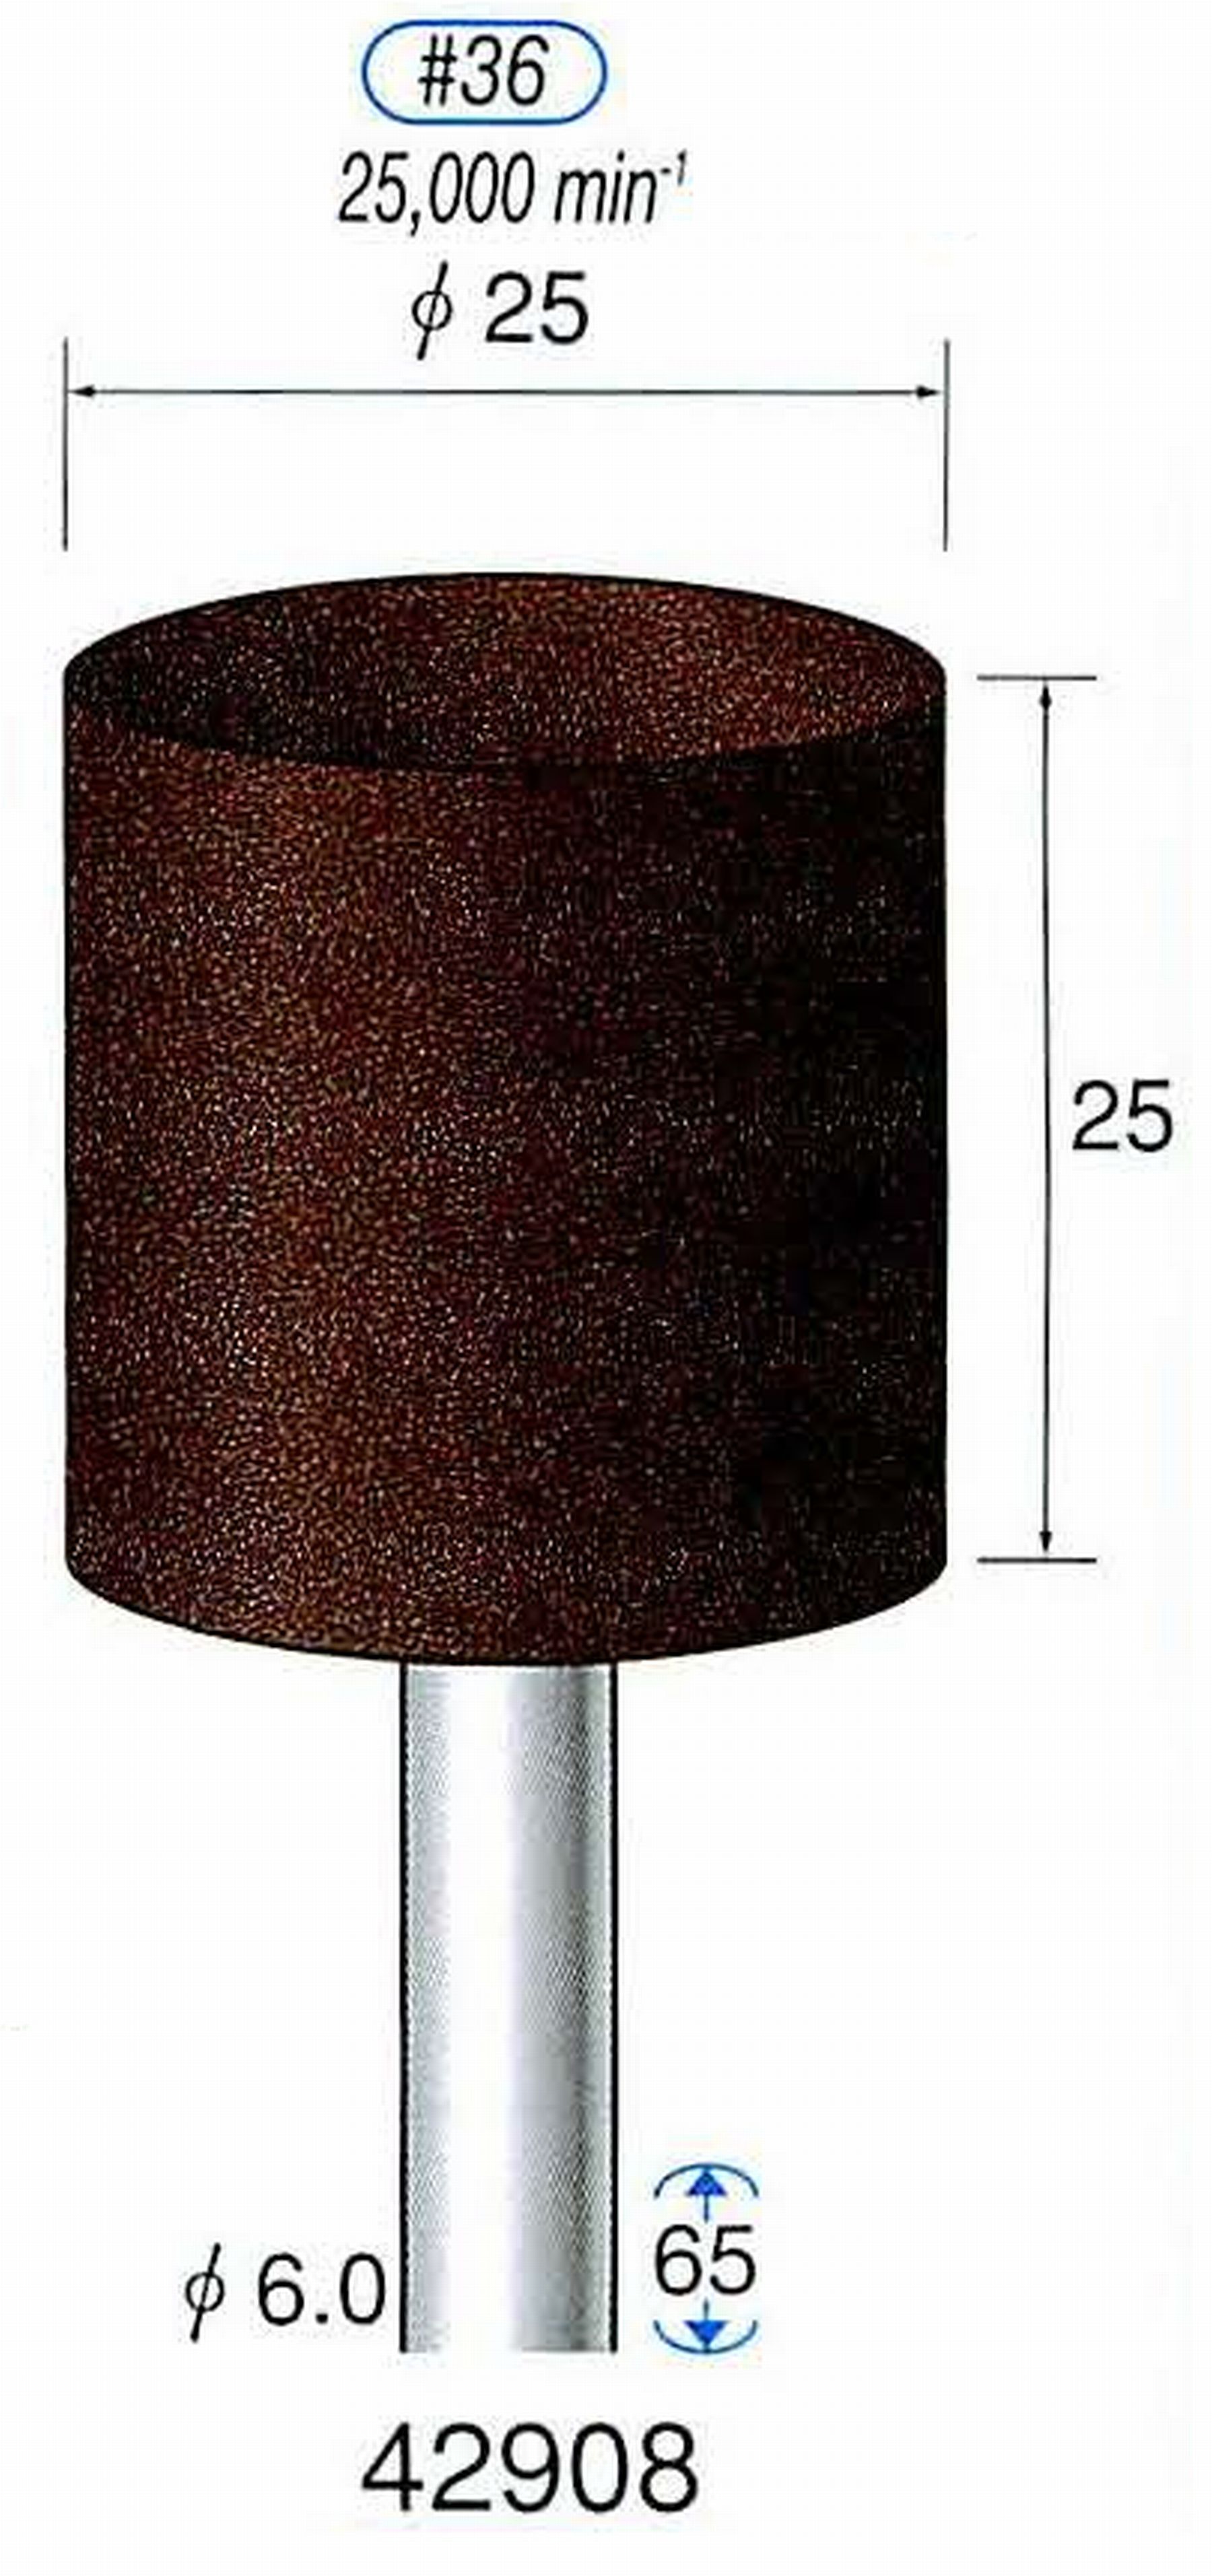 ナカニシ/NAKANISHI 軸付砥石(A・WA砥粒) ブラウン砥石 軸径(シャンク) φ6.0mm 42908